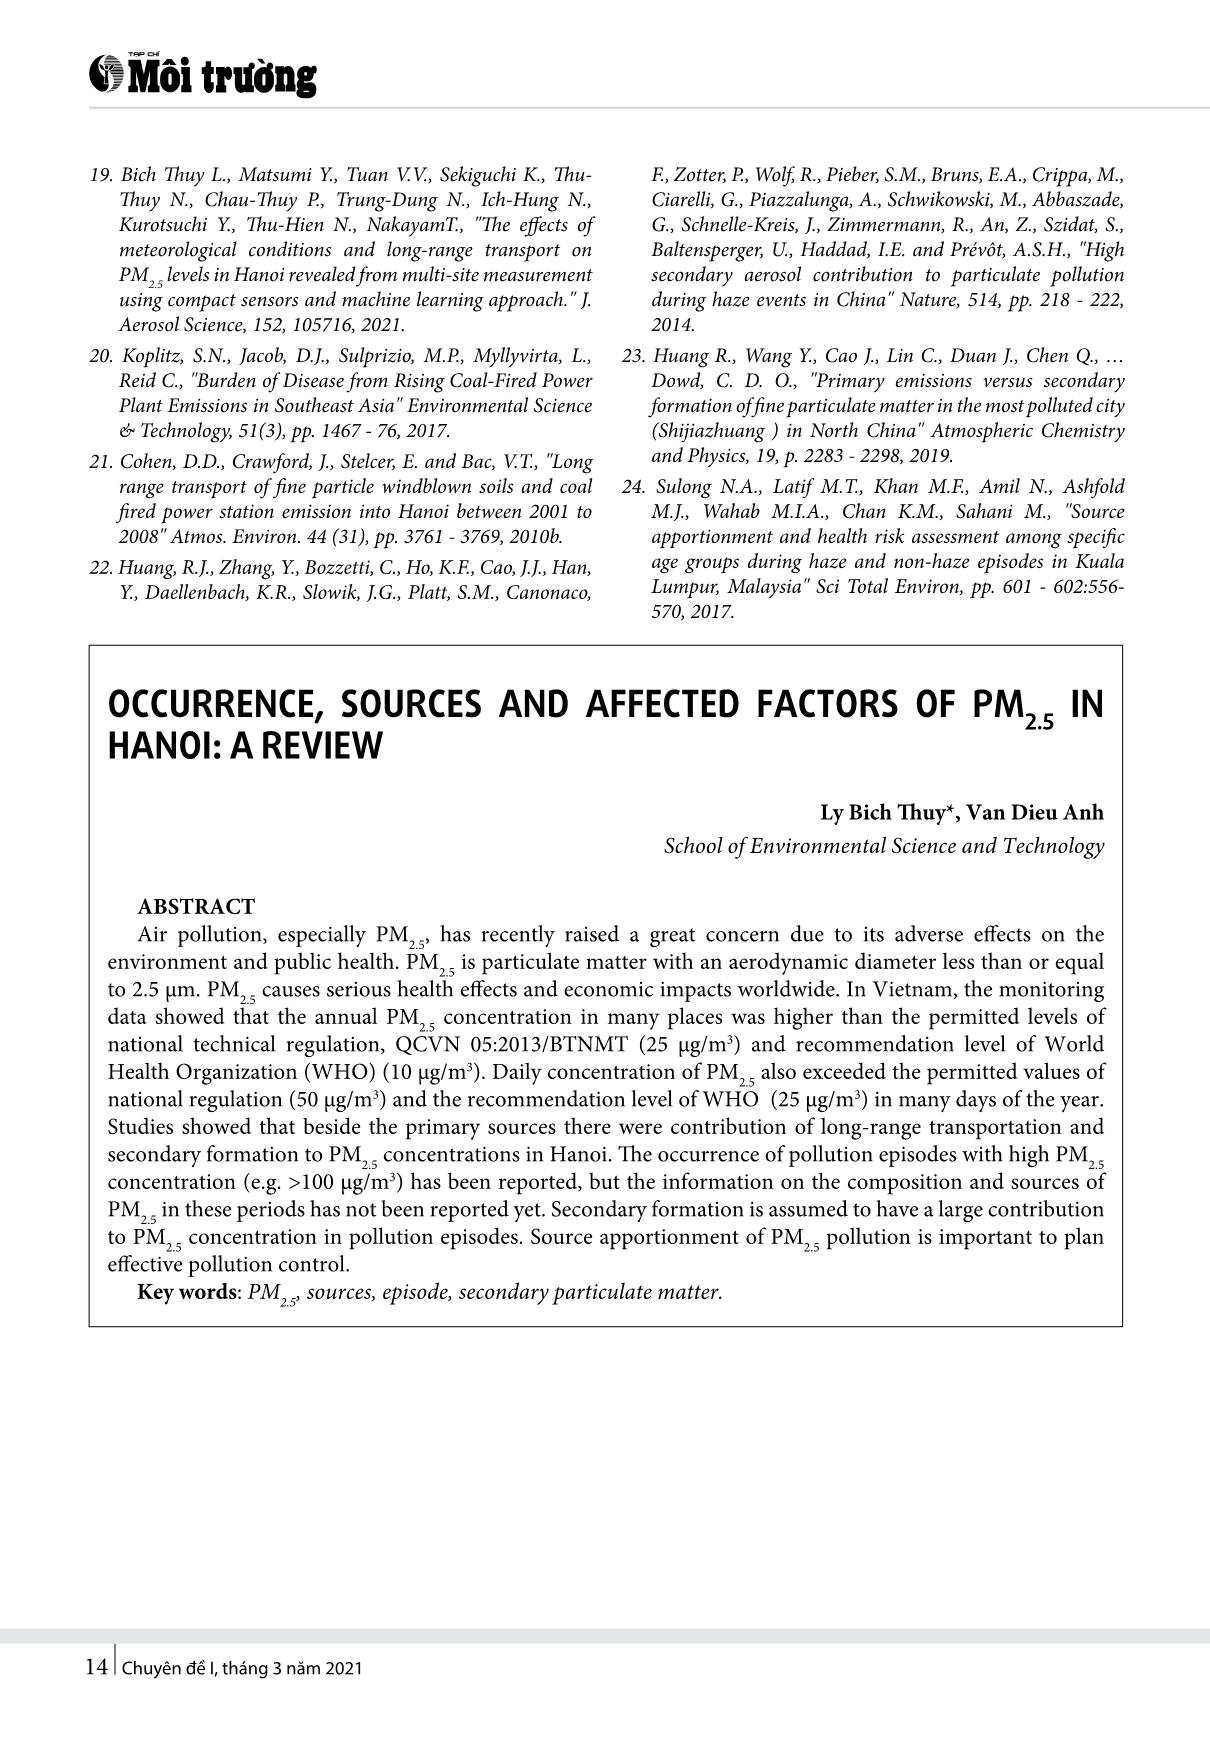 Hiện trạng, nguồn và các yếu tố ảnh hưởng tới nồng độ bụi PM2.5 tại Hà Nội: Tổng quan các nghiên cứu trang 6